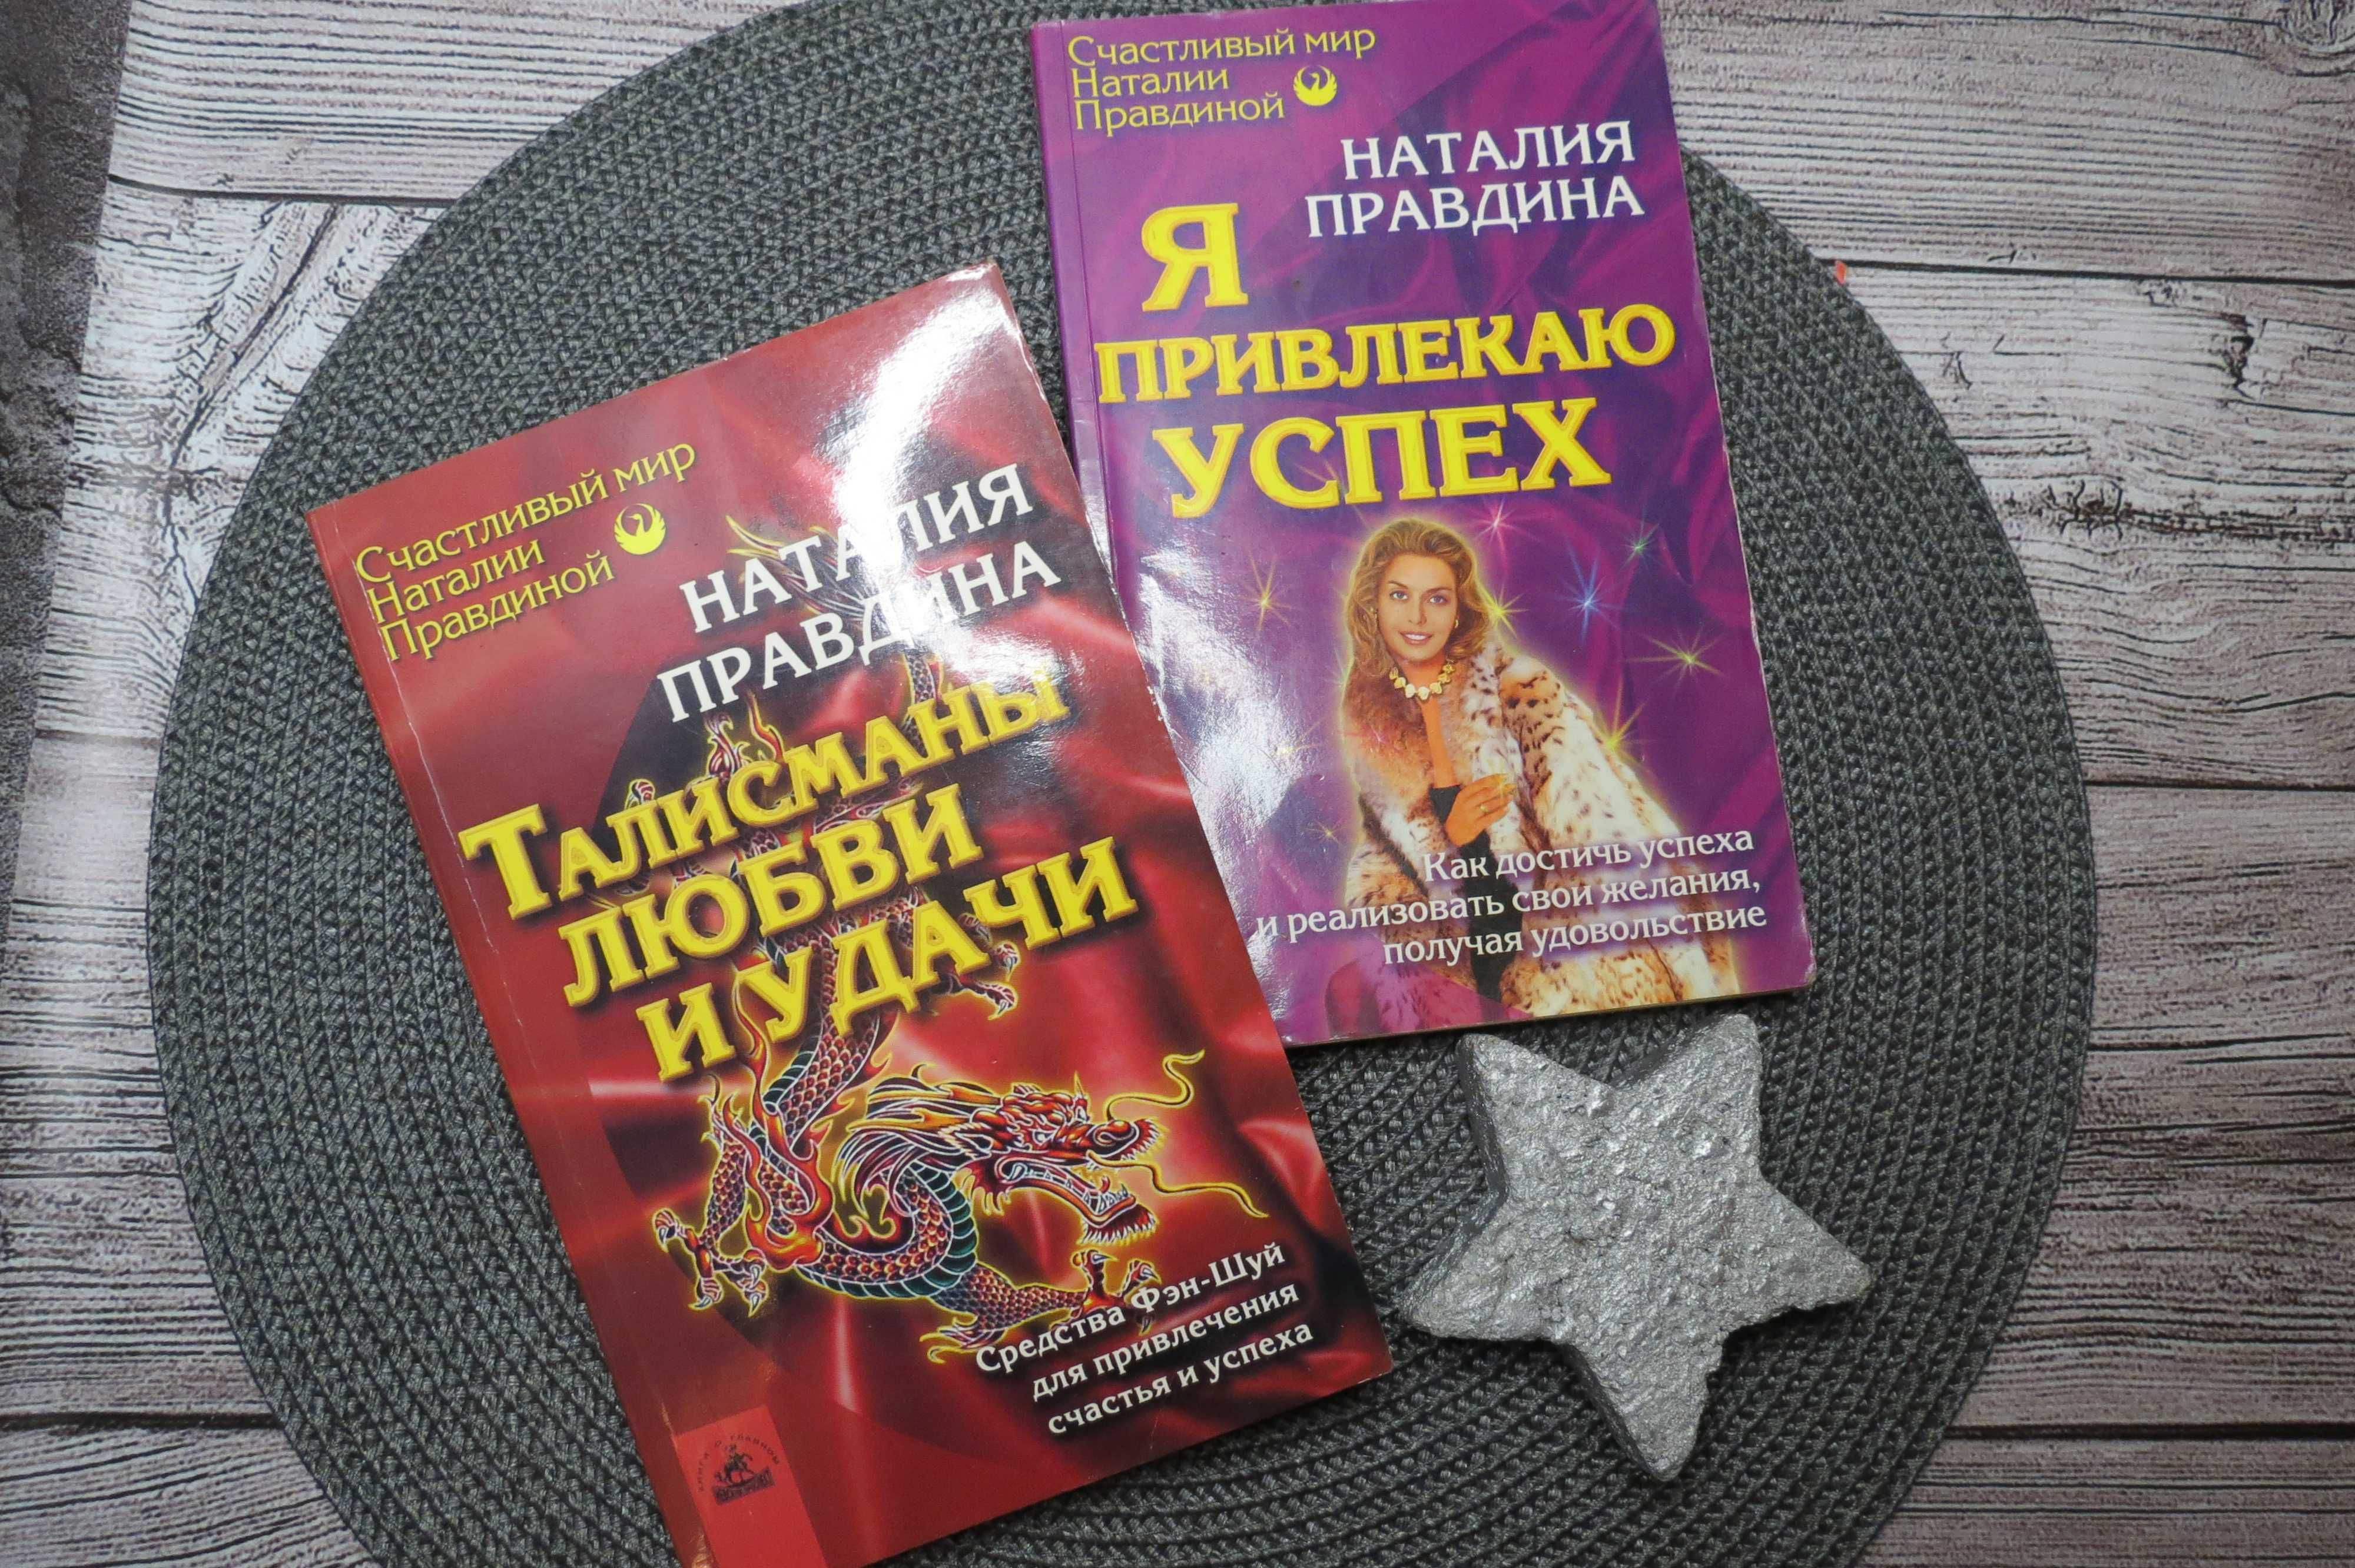 Книги  Наталия Правдина цена за 2 штуки